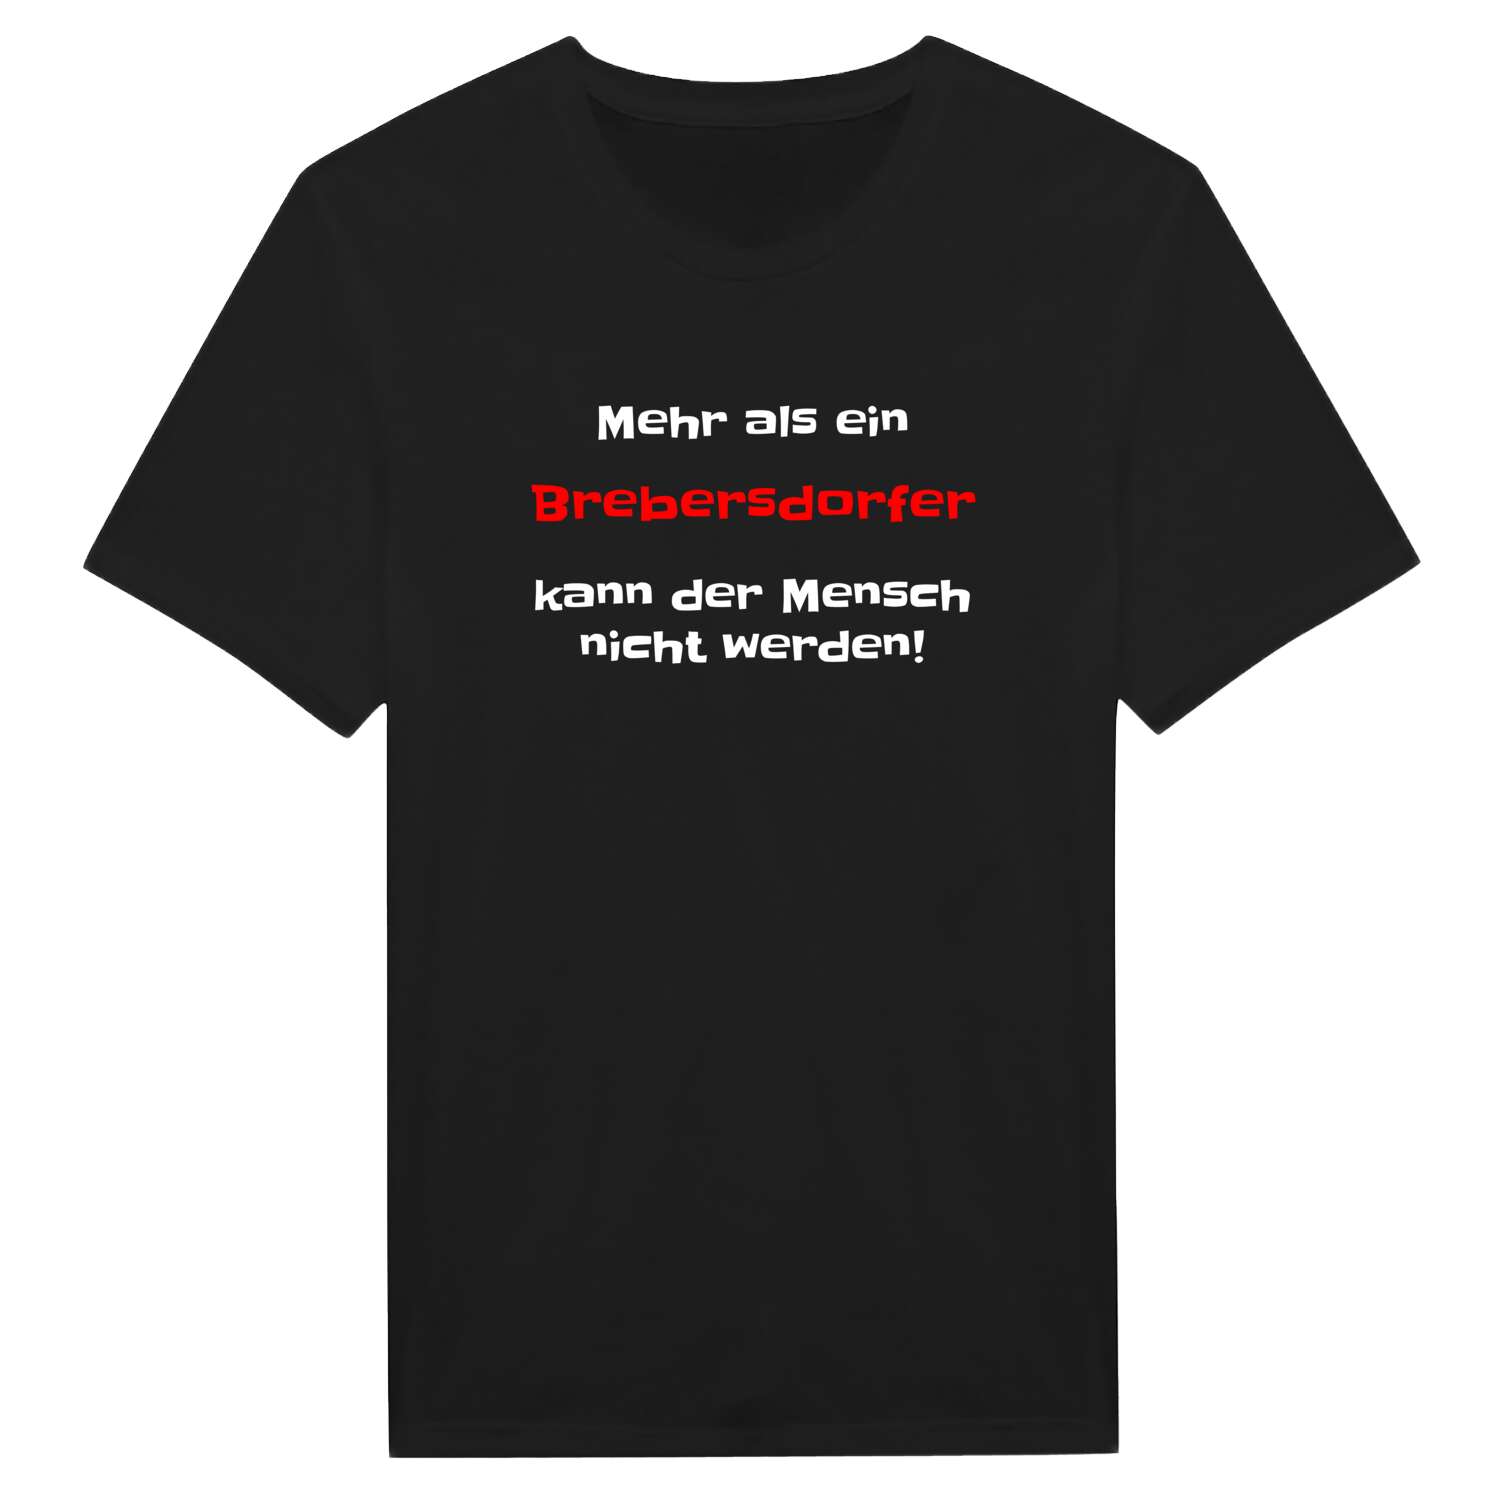 Brebersdorf T-Shirt »Mehr als ein«